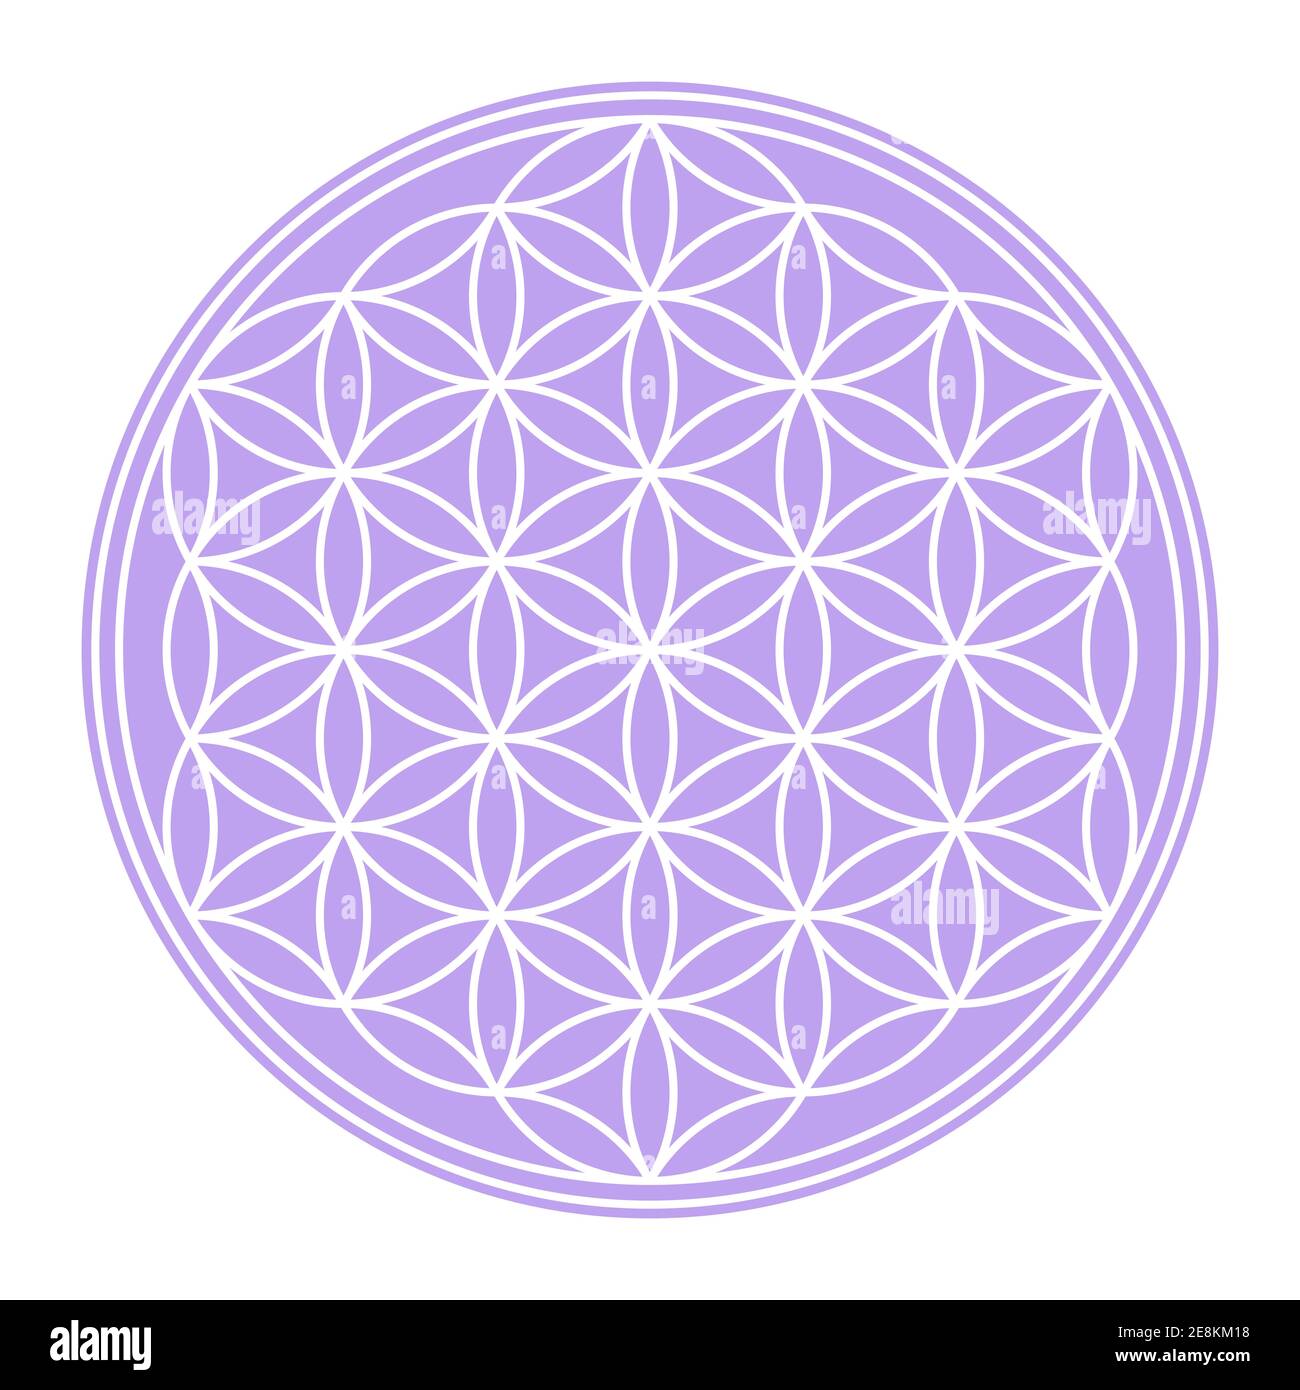 Fleur blanche de la vie sur un champ circulaire violet pastel. Figure géométrique et symbole spirituel de la géométrie sacrée. Cercles se chevauchant formant une fleur. Banque D'Images